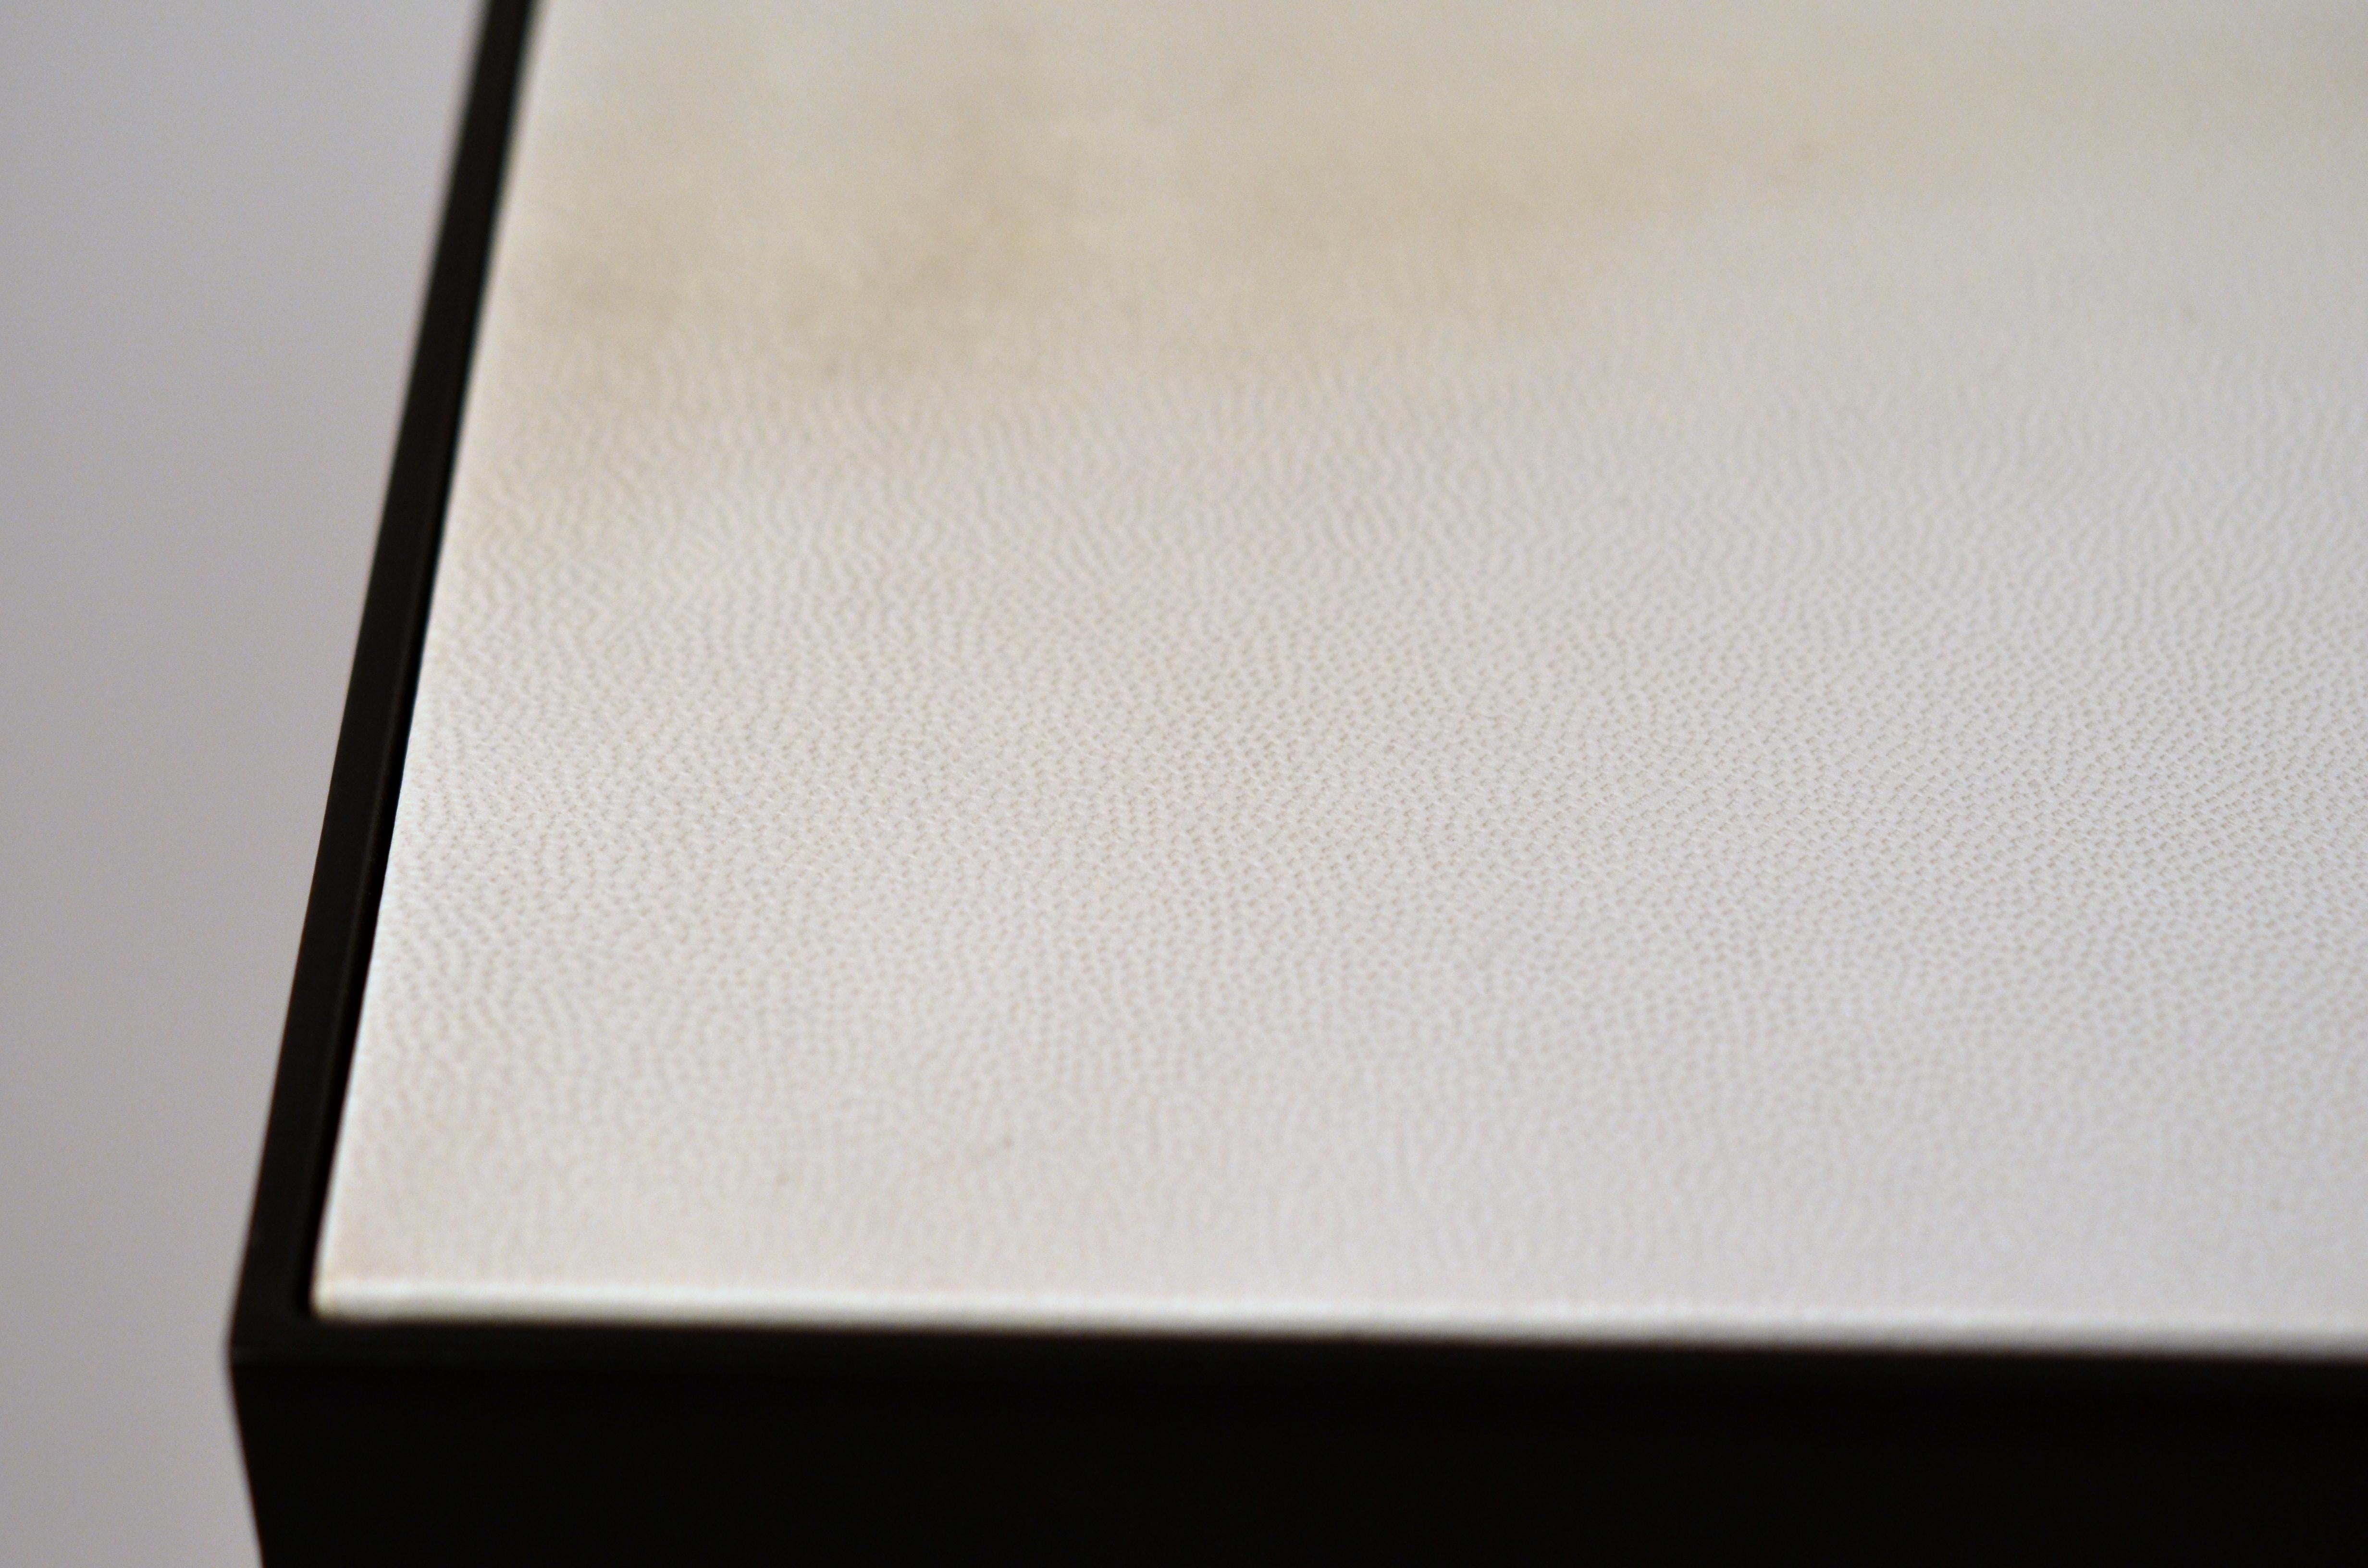 Schicke Konsole 'Esquisse' aus Schmiedeeisen und elfenbeinfarbenem Pergament von Design Frères. Kontrastierende elfenbeinfarbene Ziegenpergamentplatte über schlankem, geschwärztem Stahlsockel. Schönes, schlichtes, zurückhaltendes Design.